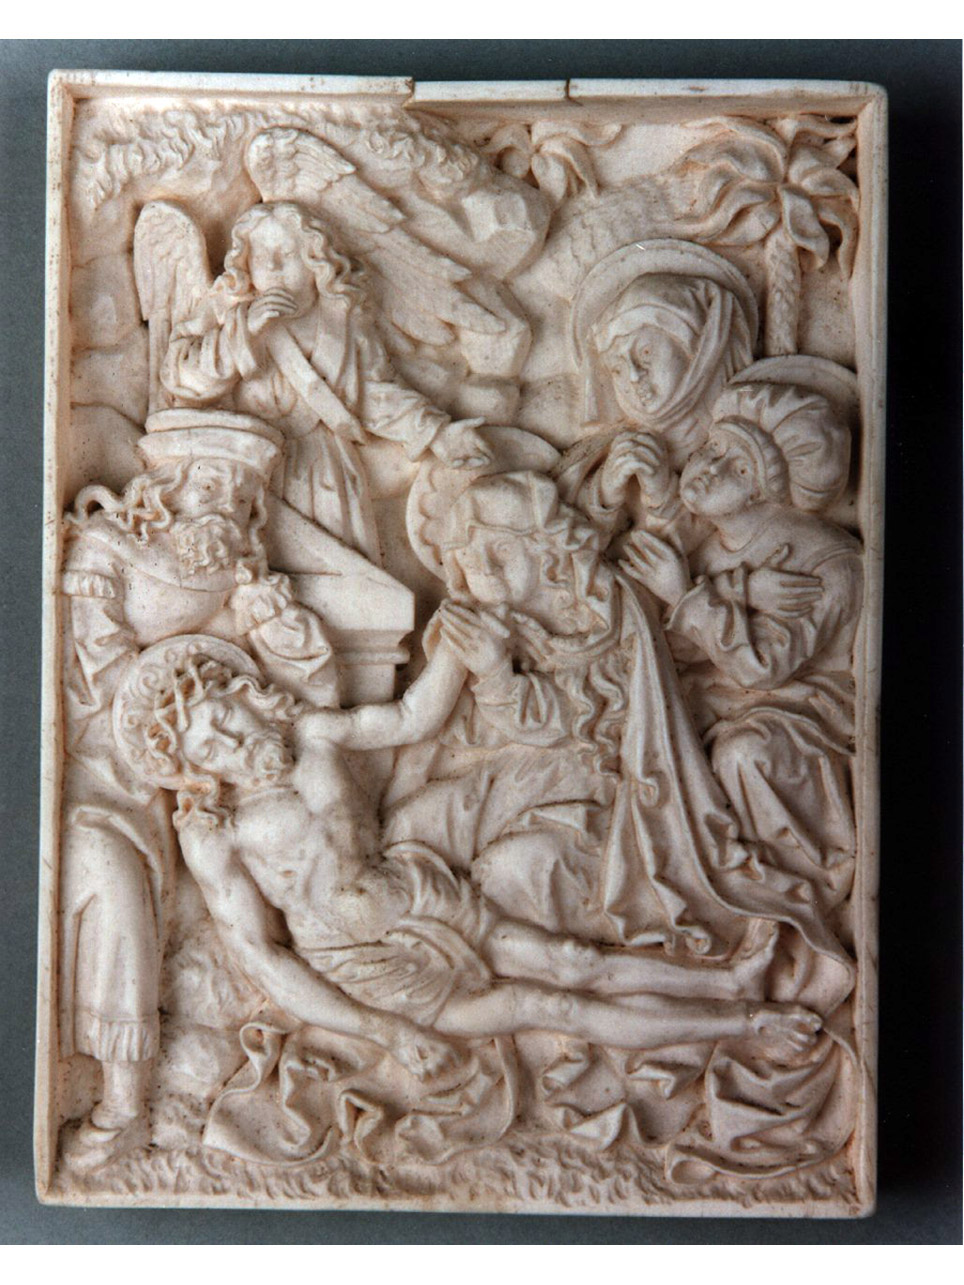 deposizione di Cristo nel sepolcro (placchetta) - bottega francese (primo quarto sec. XV)